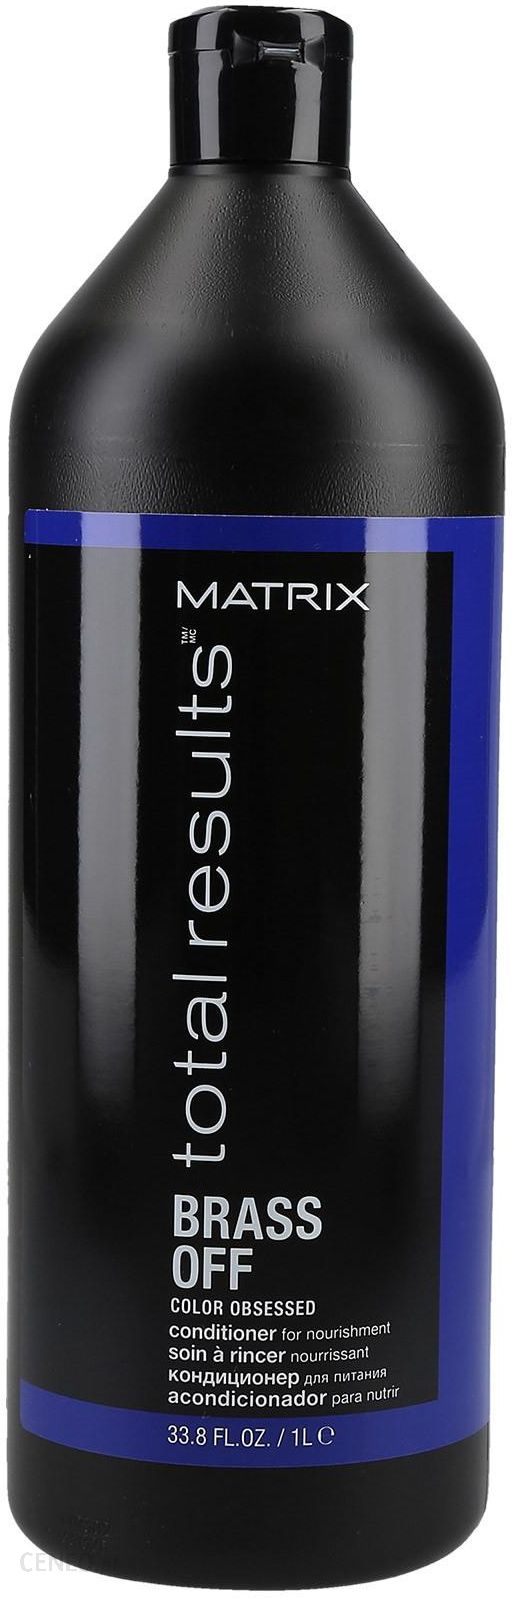 Odżywka do włosów Matrix Brass Off Odżywka Neutralizująca Kolor 1000 ml -  Opinie i ceny na